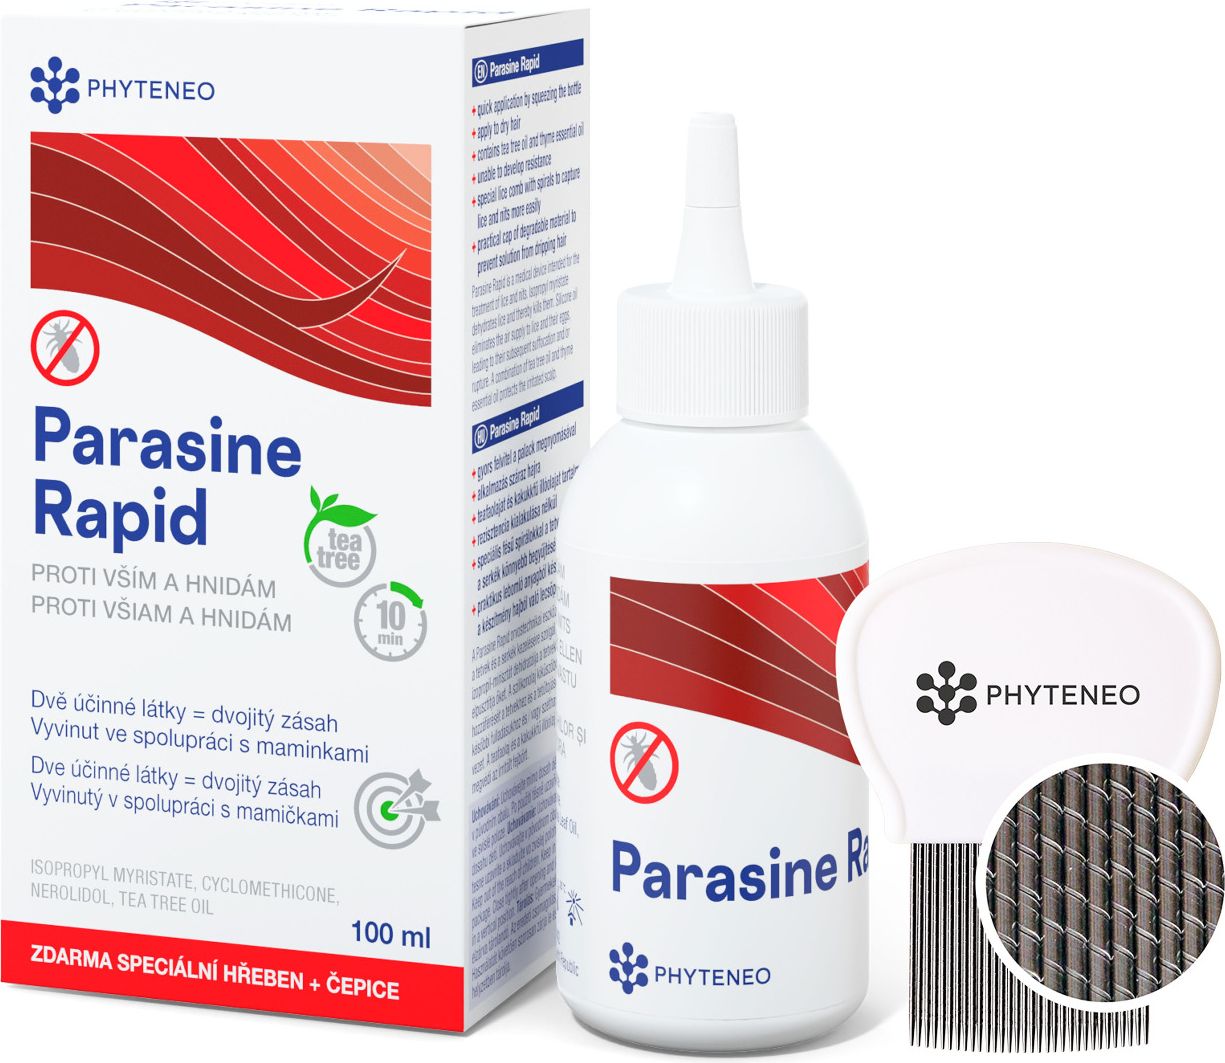 Phyteneo Parasine Rapid 100 ml + speciální hřeben + čepice - obrázek 1